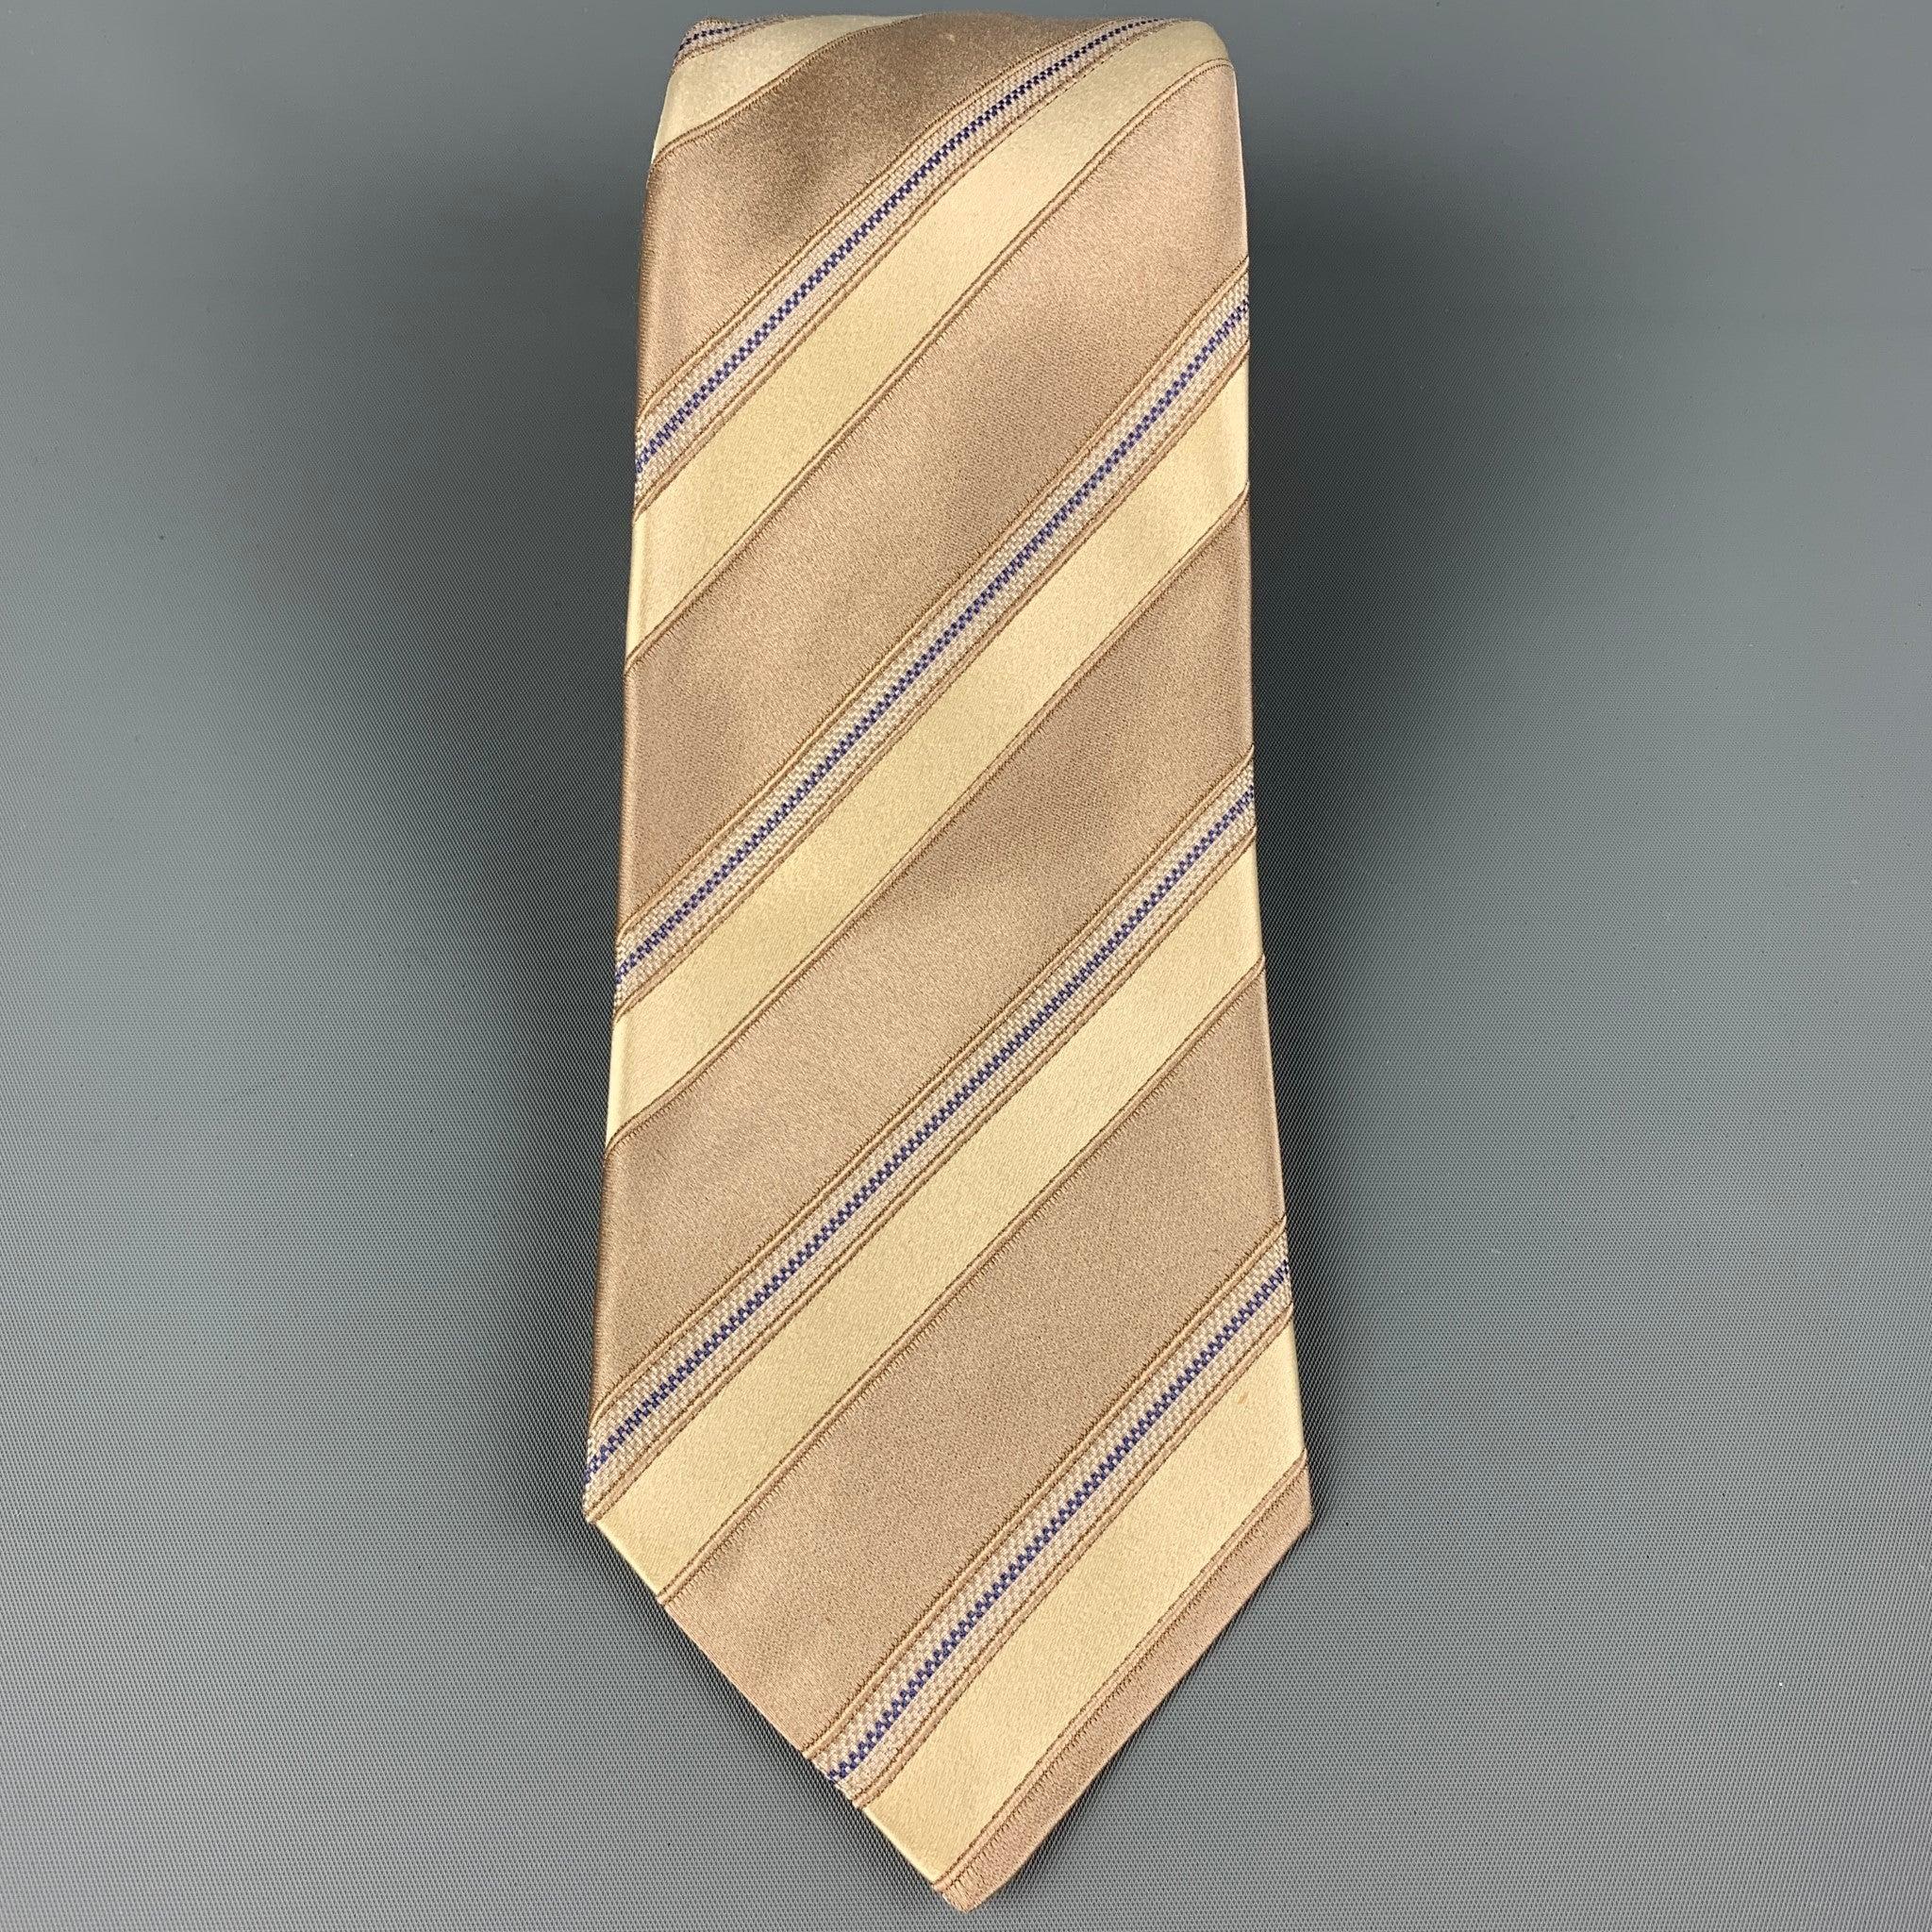 KITON Krawatte aus taupefarbener und gelber Seide mit diagonalem Streifendruck. Hergestellt in Italien. Sehr guter, gebrauchter Zustand, Breite: 3.75 Zoll  Länge: 62 Zoll 


  
  
 
Sui Generis-Referenz: 120386
Kategorie: Krawatte
Mehr Details
   